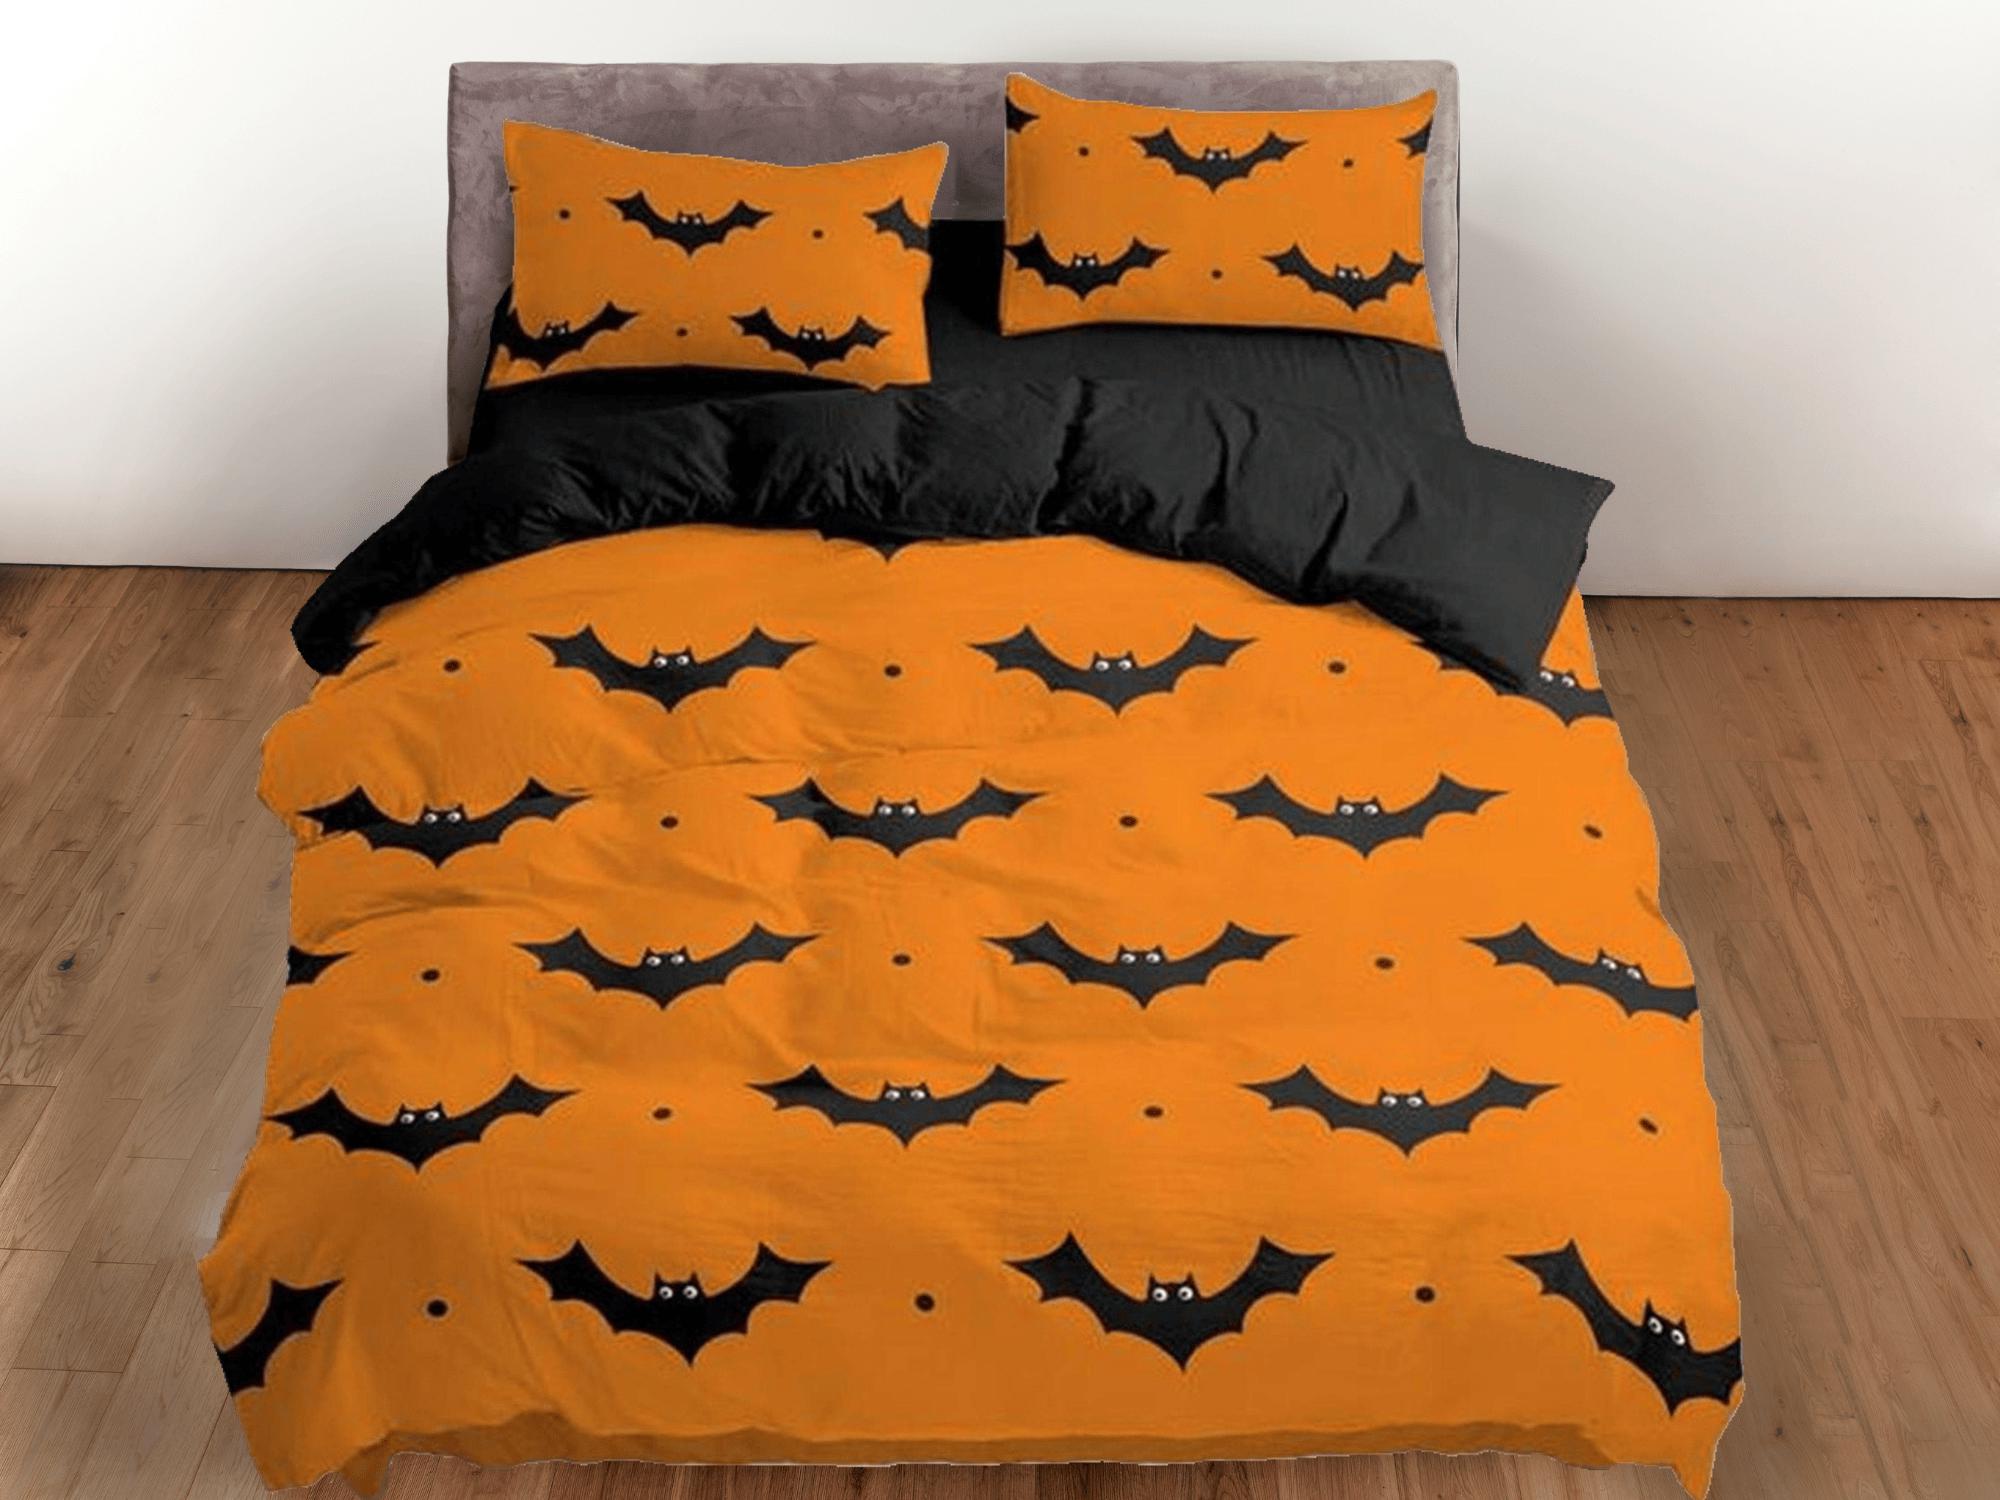 daintyduvet Bat pattern orange halloween full size bedding & pillowcase, duvet cover set dorm bedding, halloween nursery toddler bedding, halloween gift